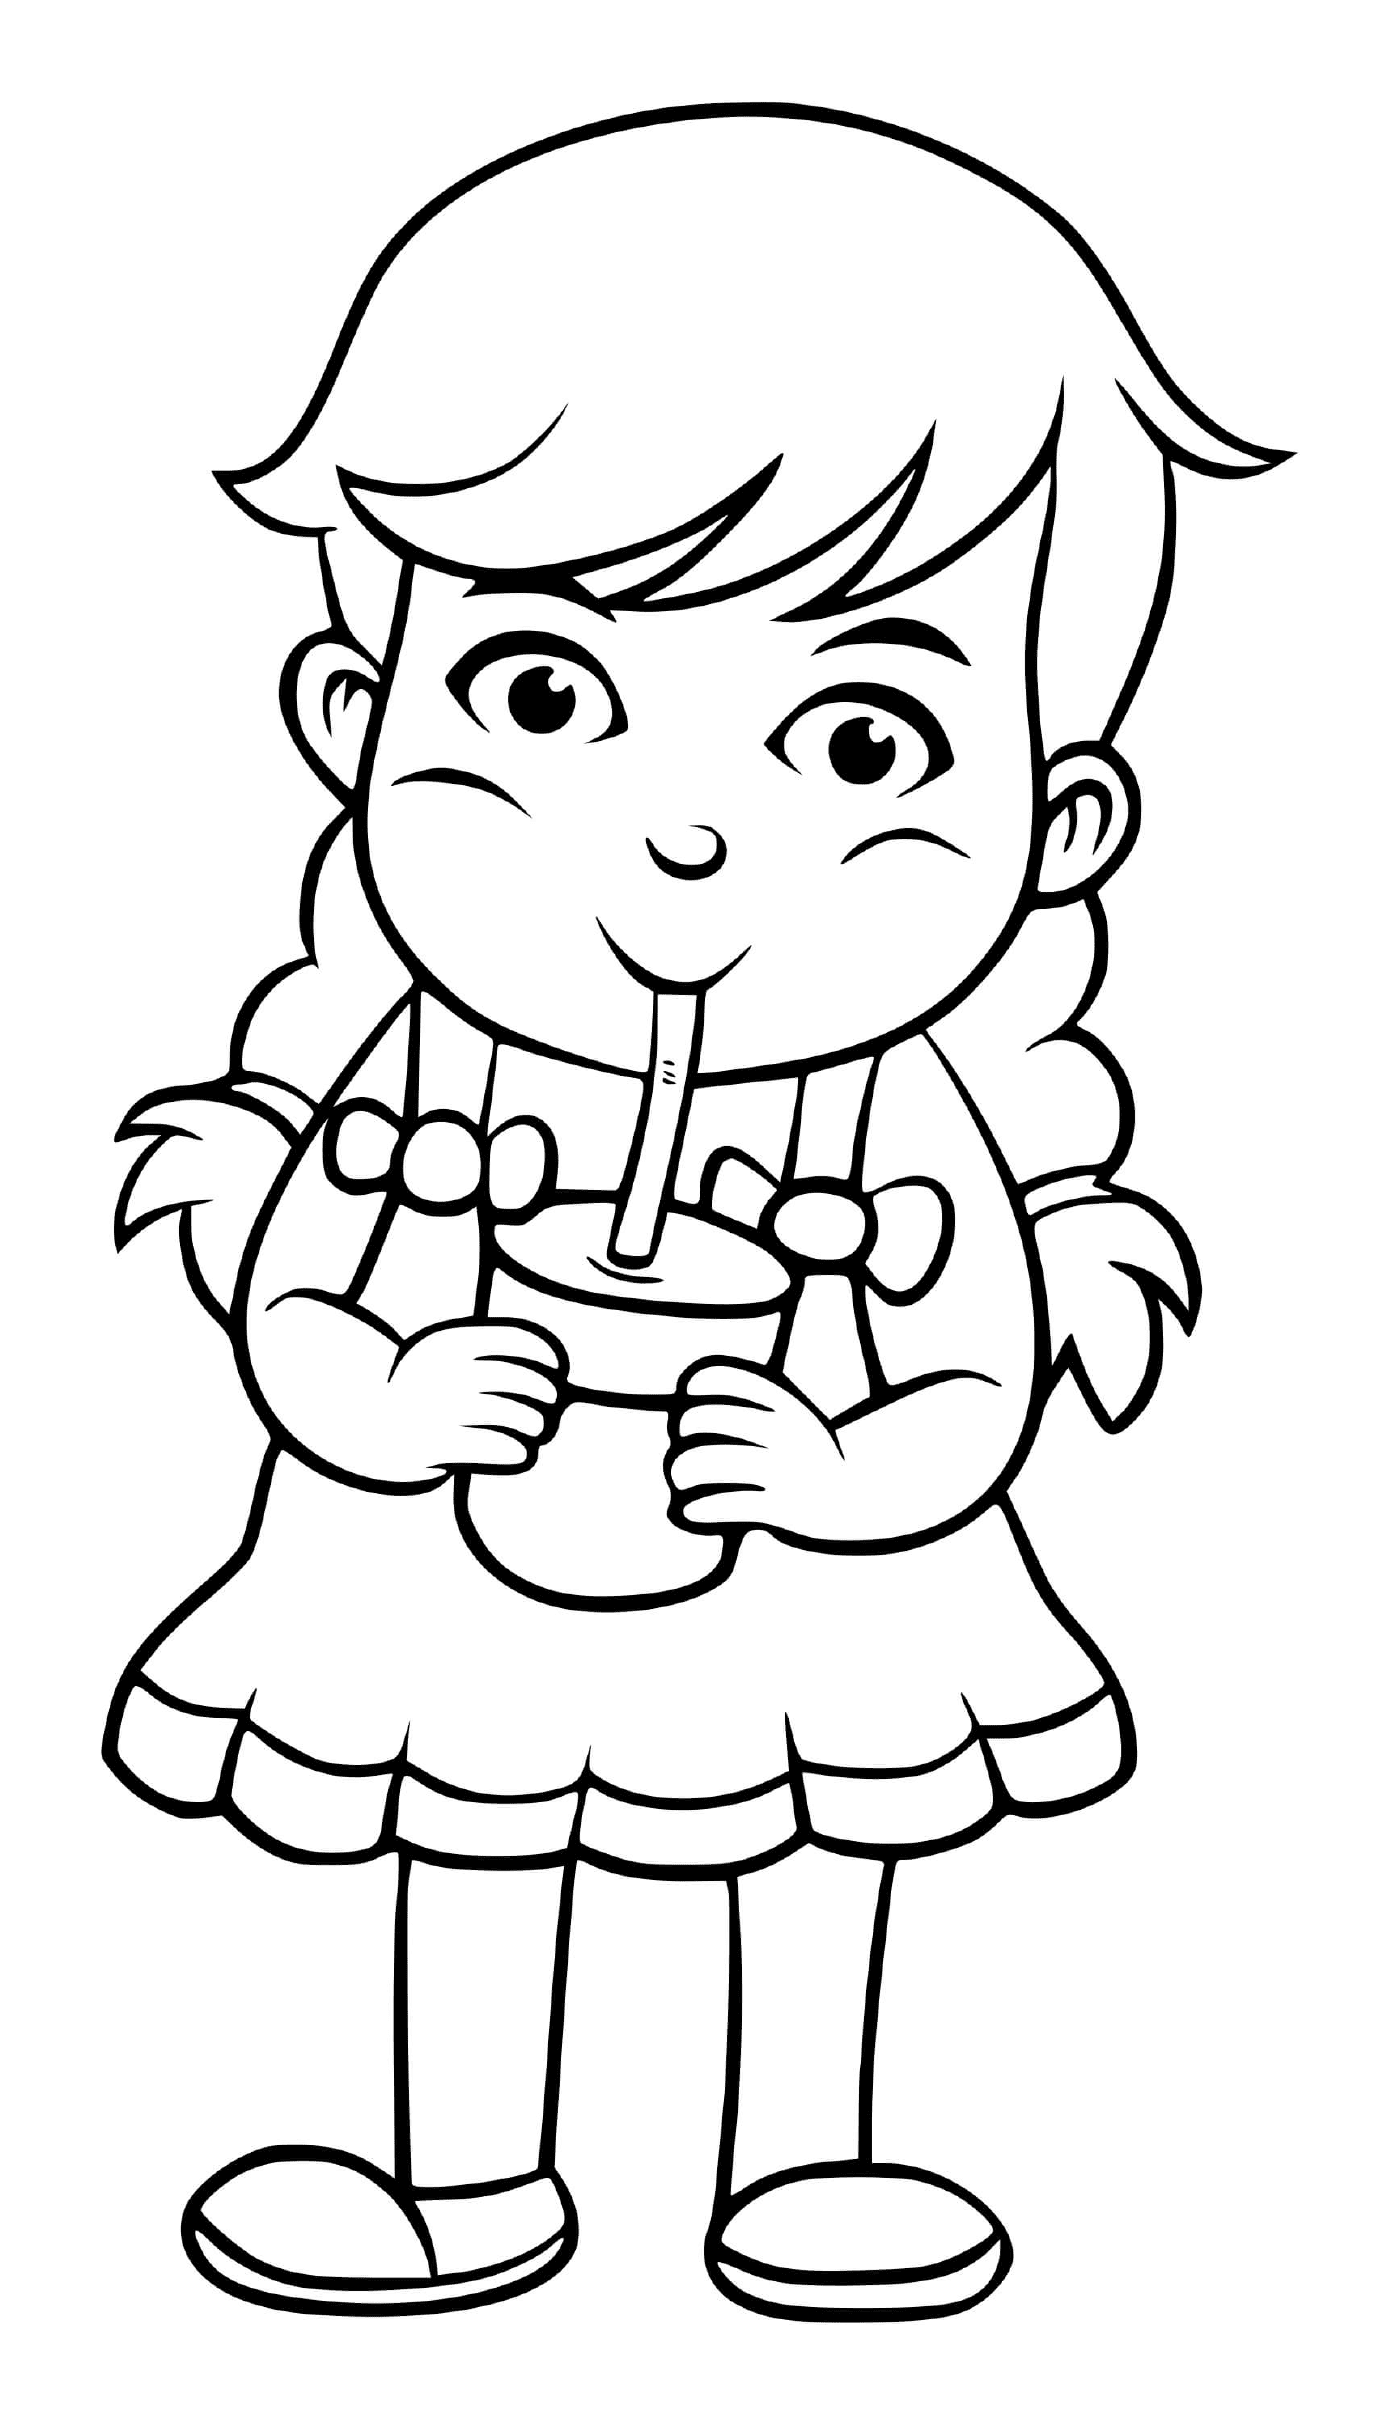  Девочка пьет воду, чтобы оставаться в воде и приличной 